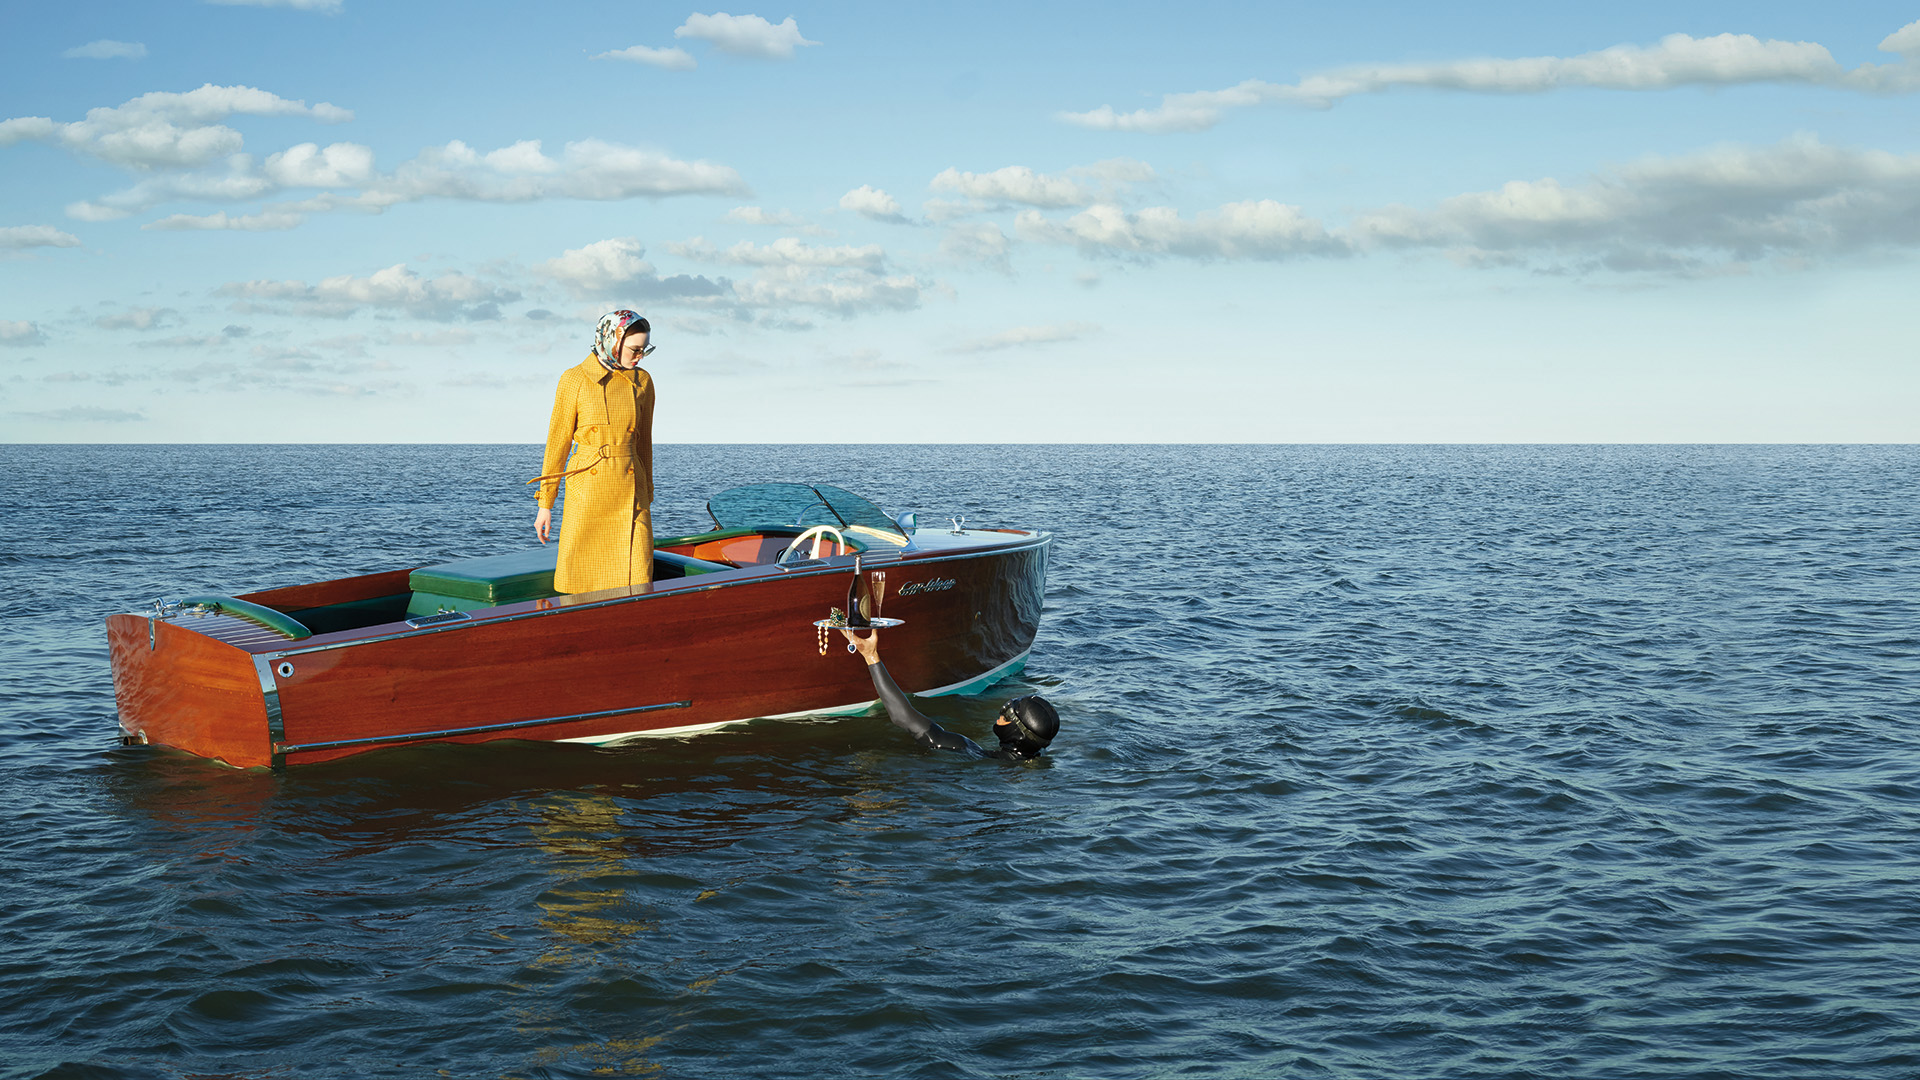 echelon ad campaign woman in boat